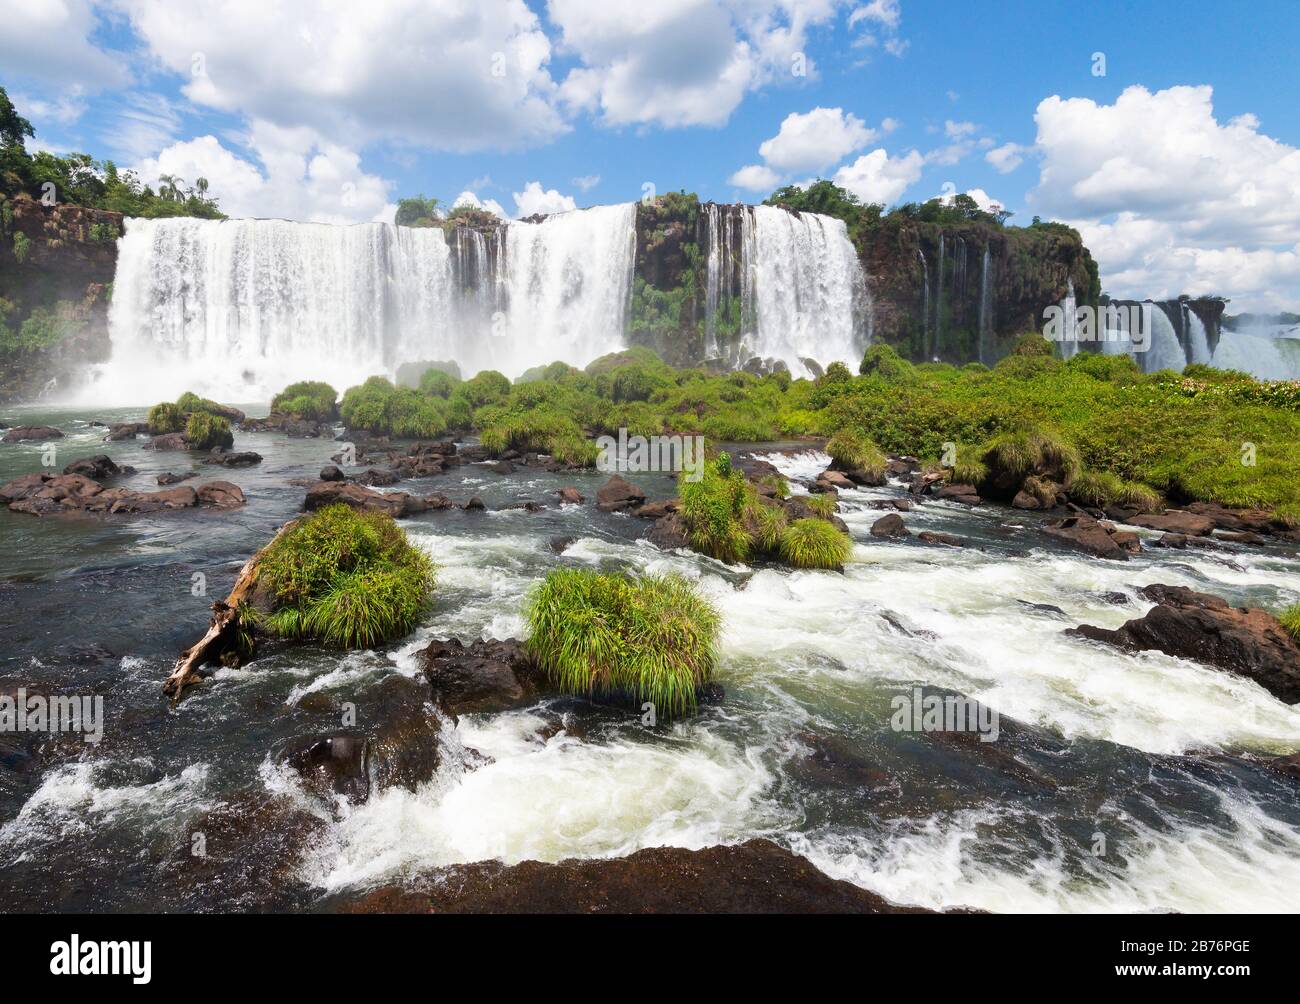 Wasserfälle im Nationalpark Iguazu in Brasilien. Iguaçu Der Fluss Parana fließt durch Wasserfälle und starken Wasserfluss. Stockfoto